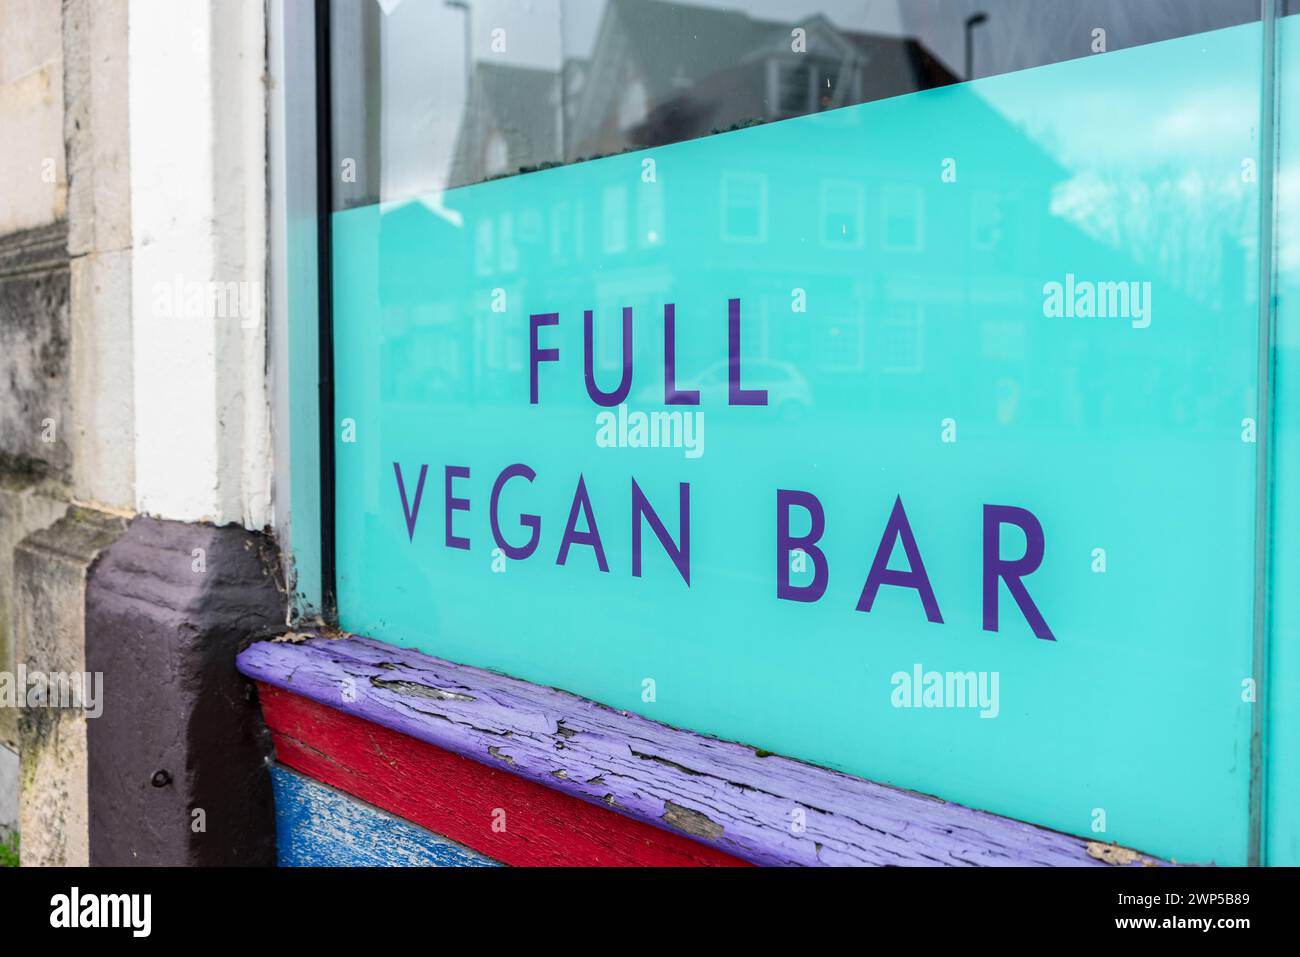 Affichage complet Vegan Bar dans une fenêtre dans un restaurant végétalien de nourriture et de boissons, Southampton, Angleterre, Royaume-Uni Banque D'Images